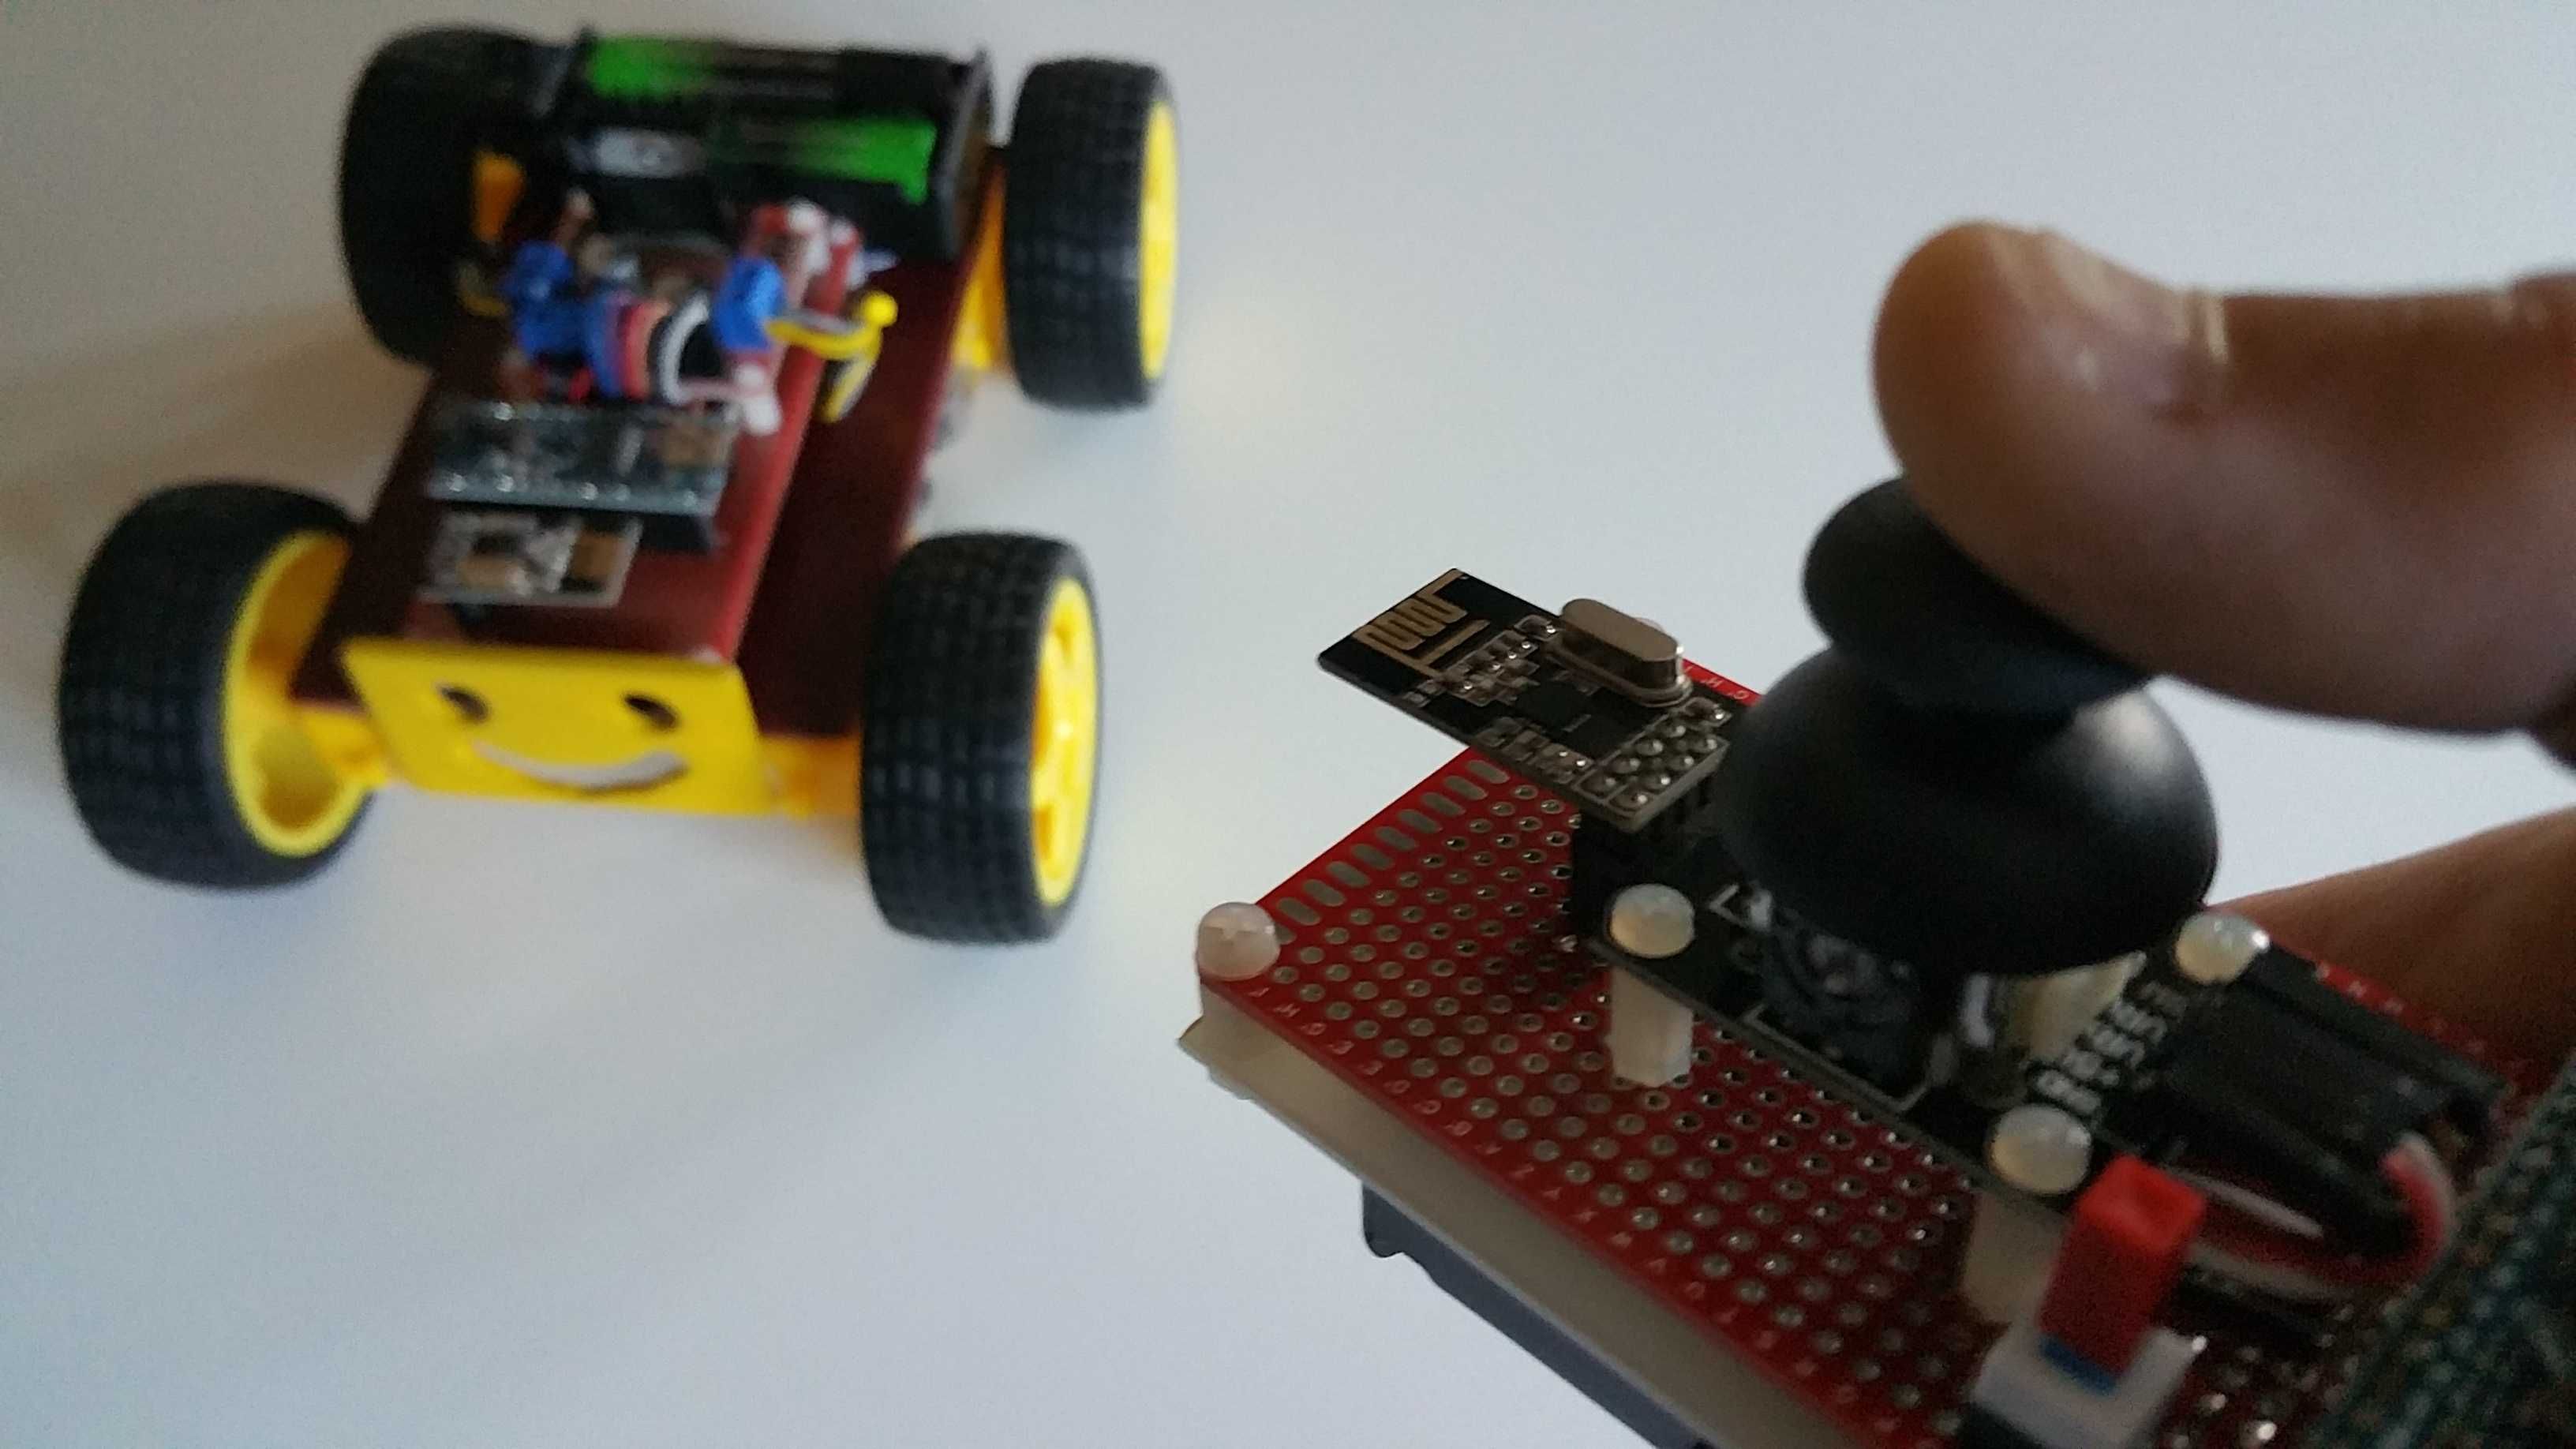 Carro Robot Educacional Arduino programado controlado por Joystick.